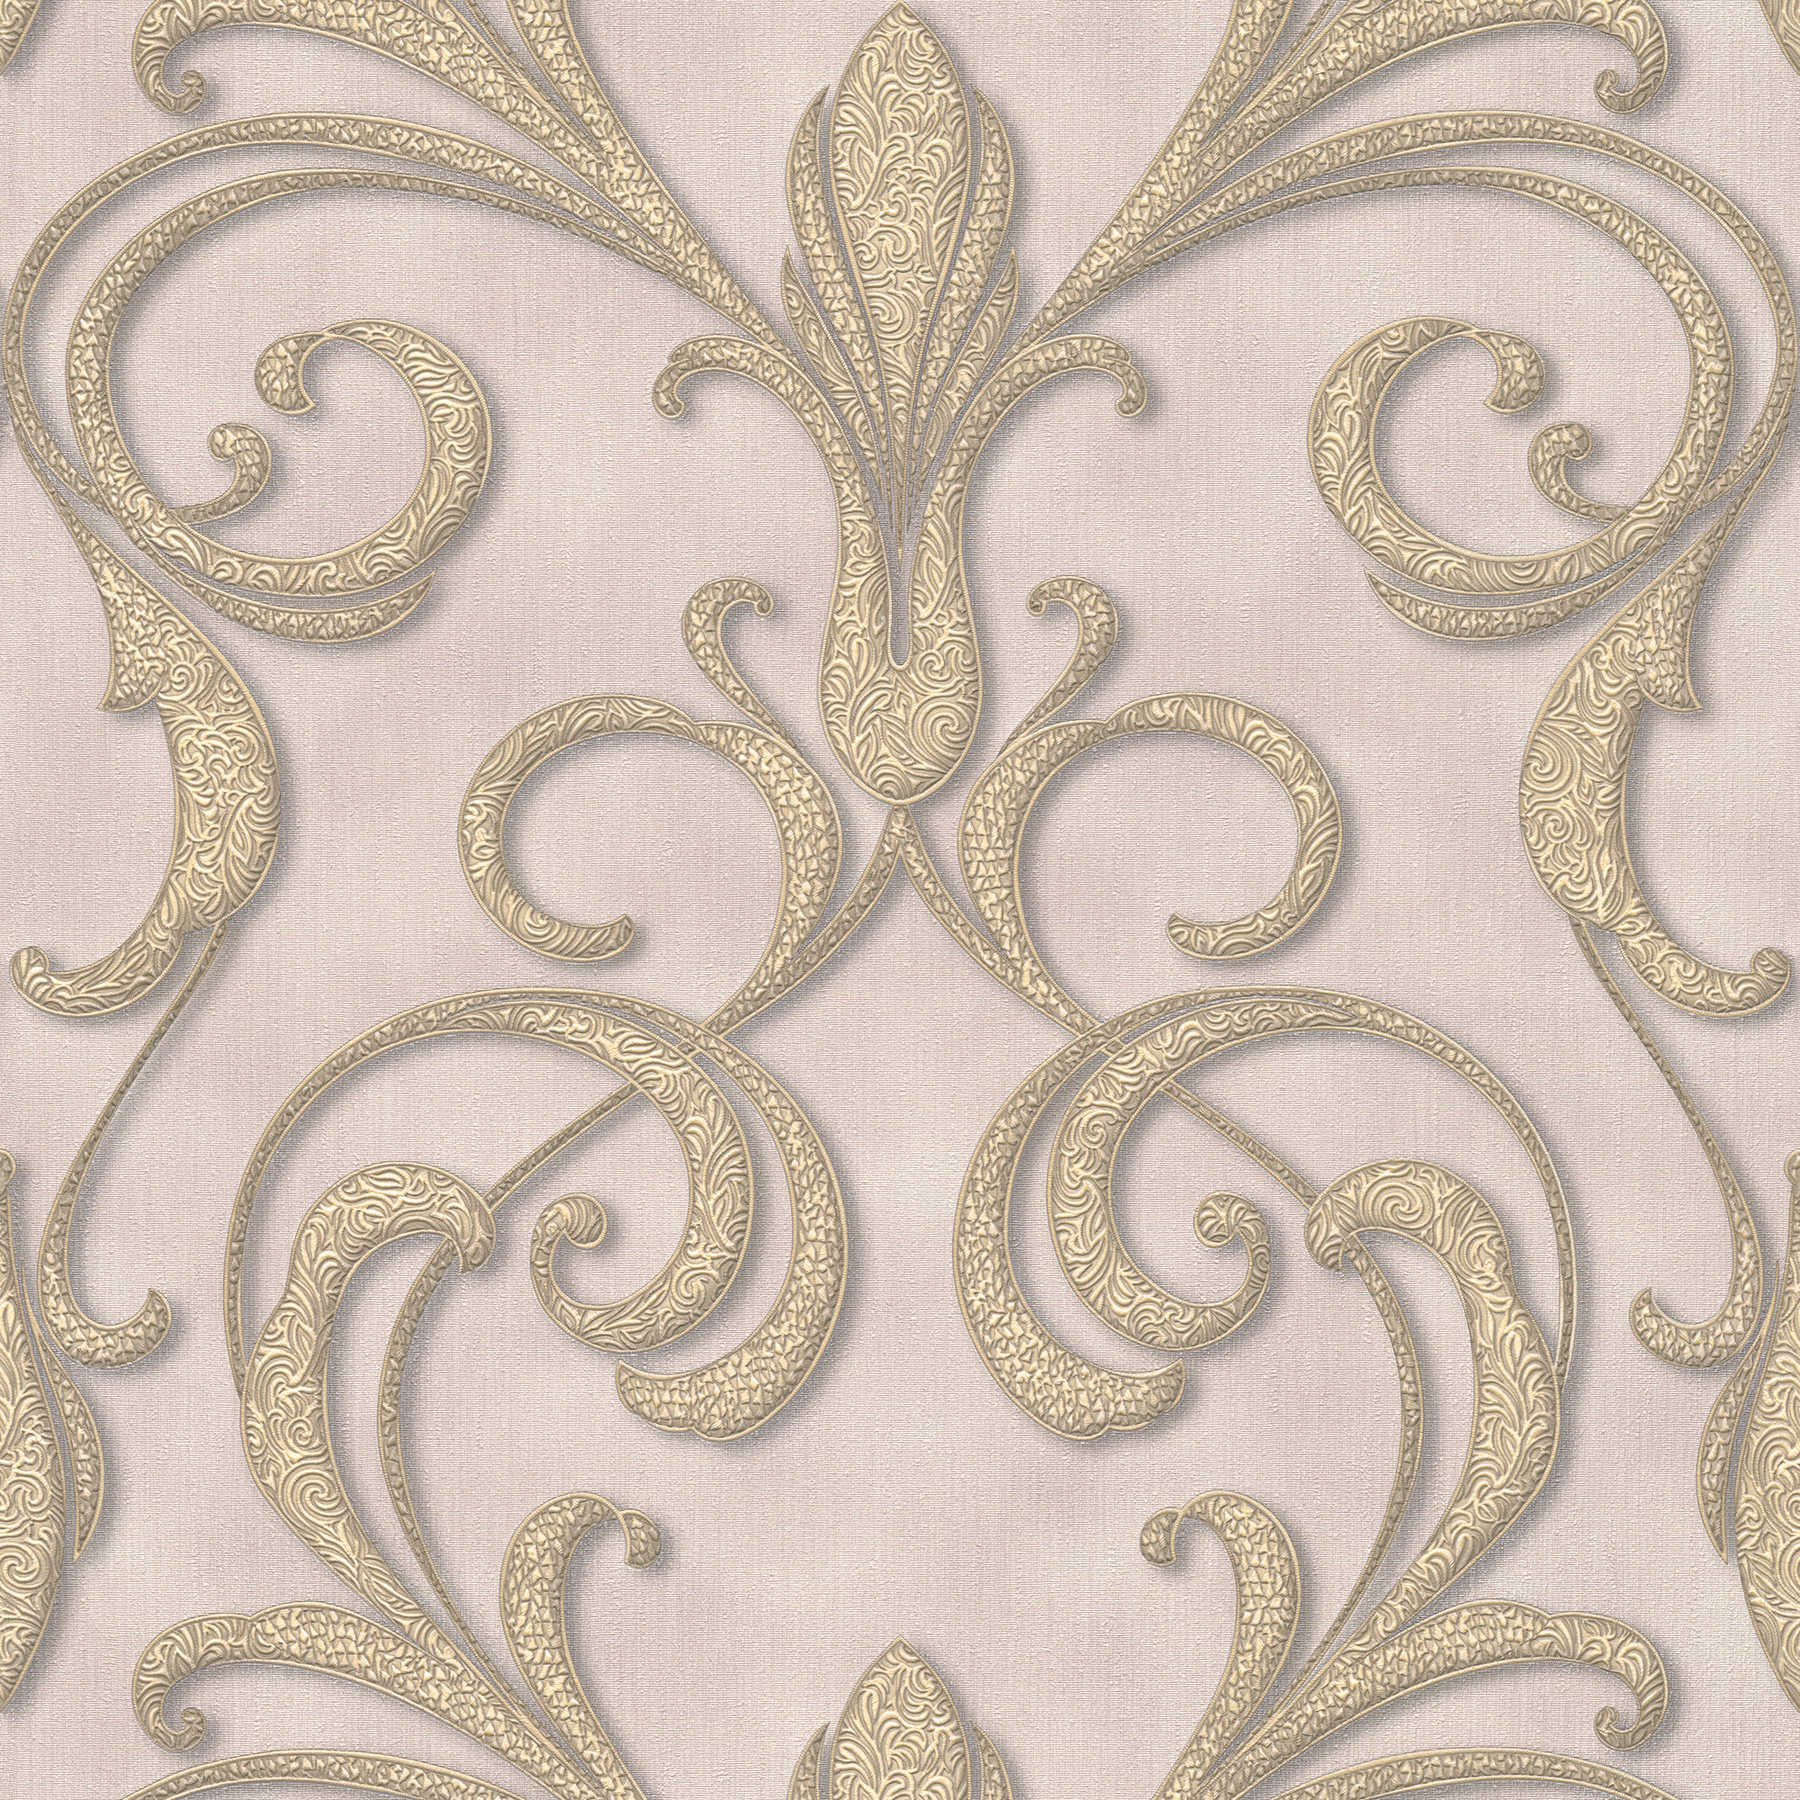 Filigraan ornamentbehang in barokstijl - goud, paars, bruin
